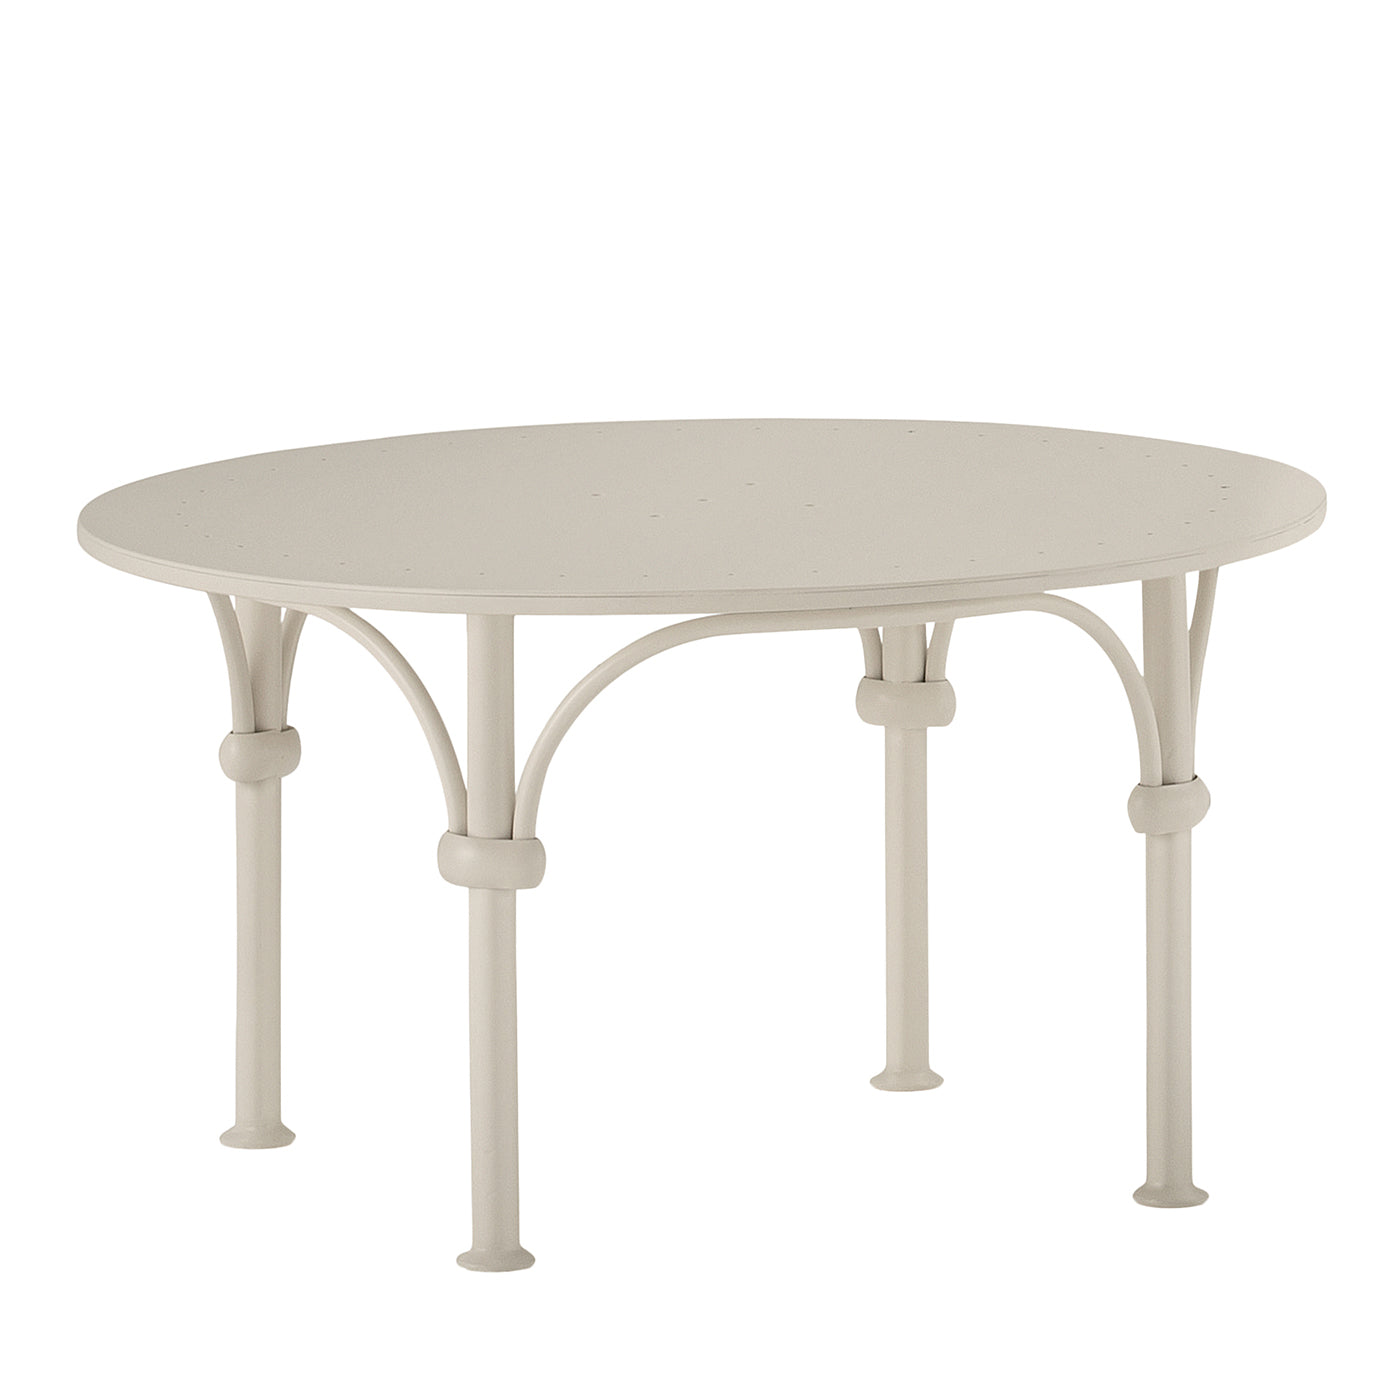 Tavolario Wrought Iron White Round Coffee Table - Main view